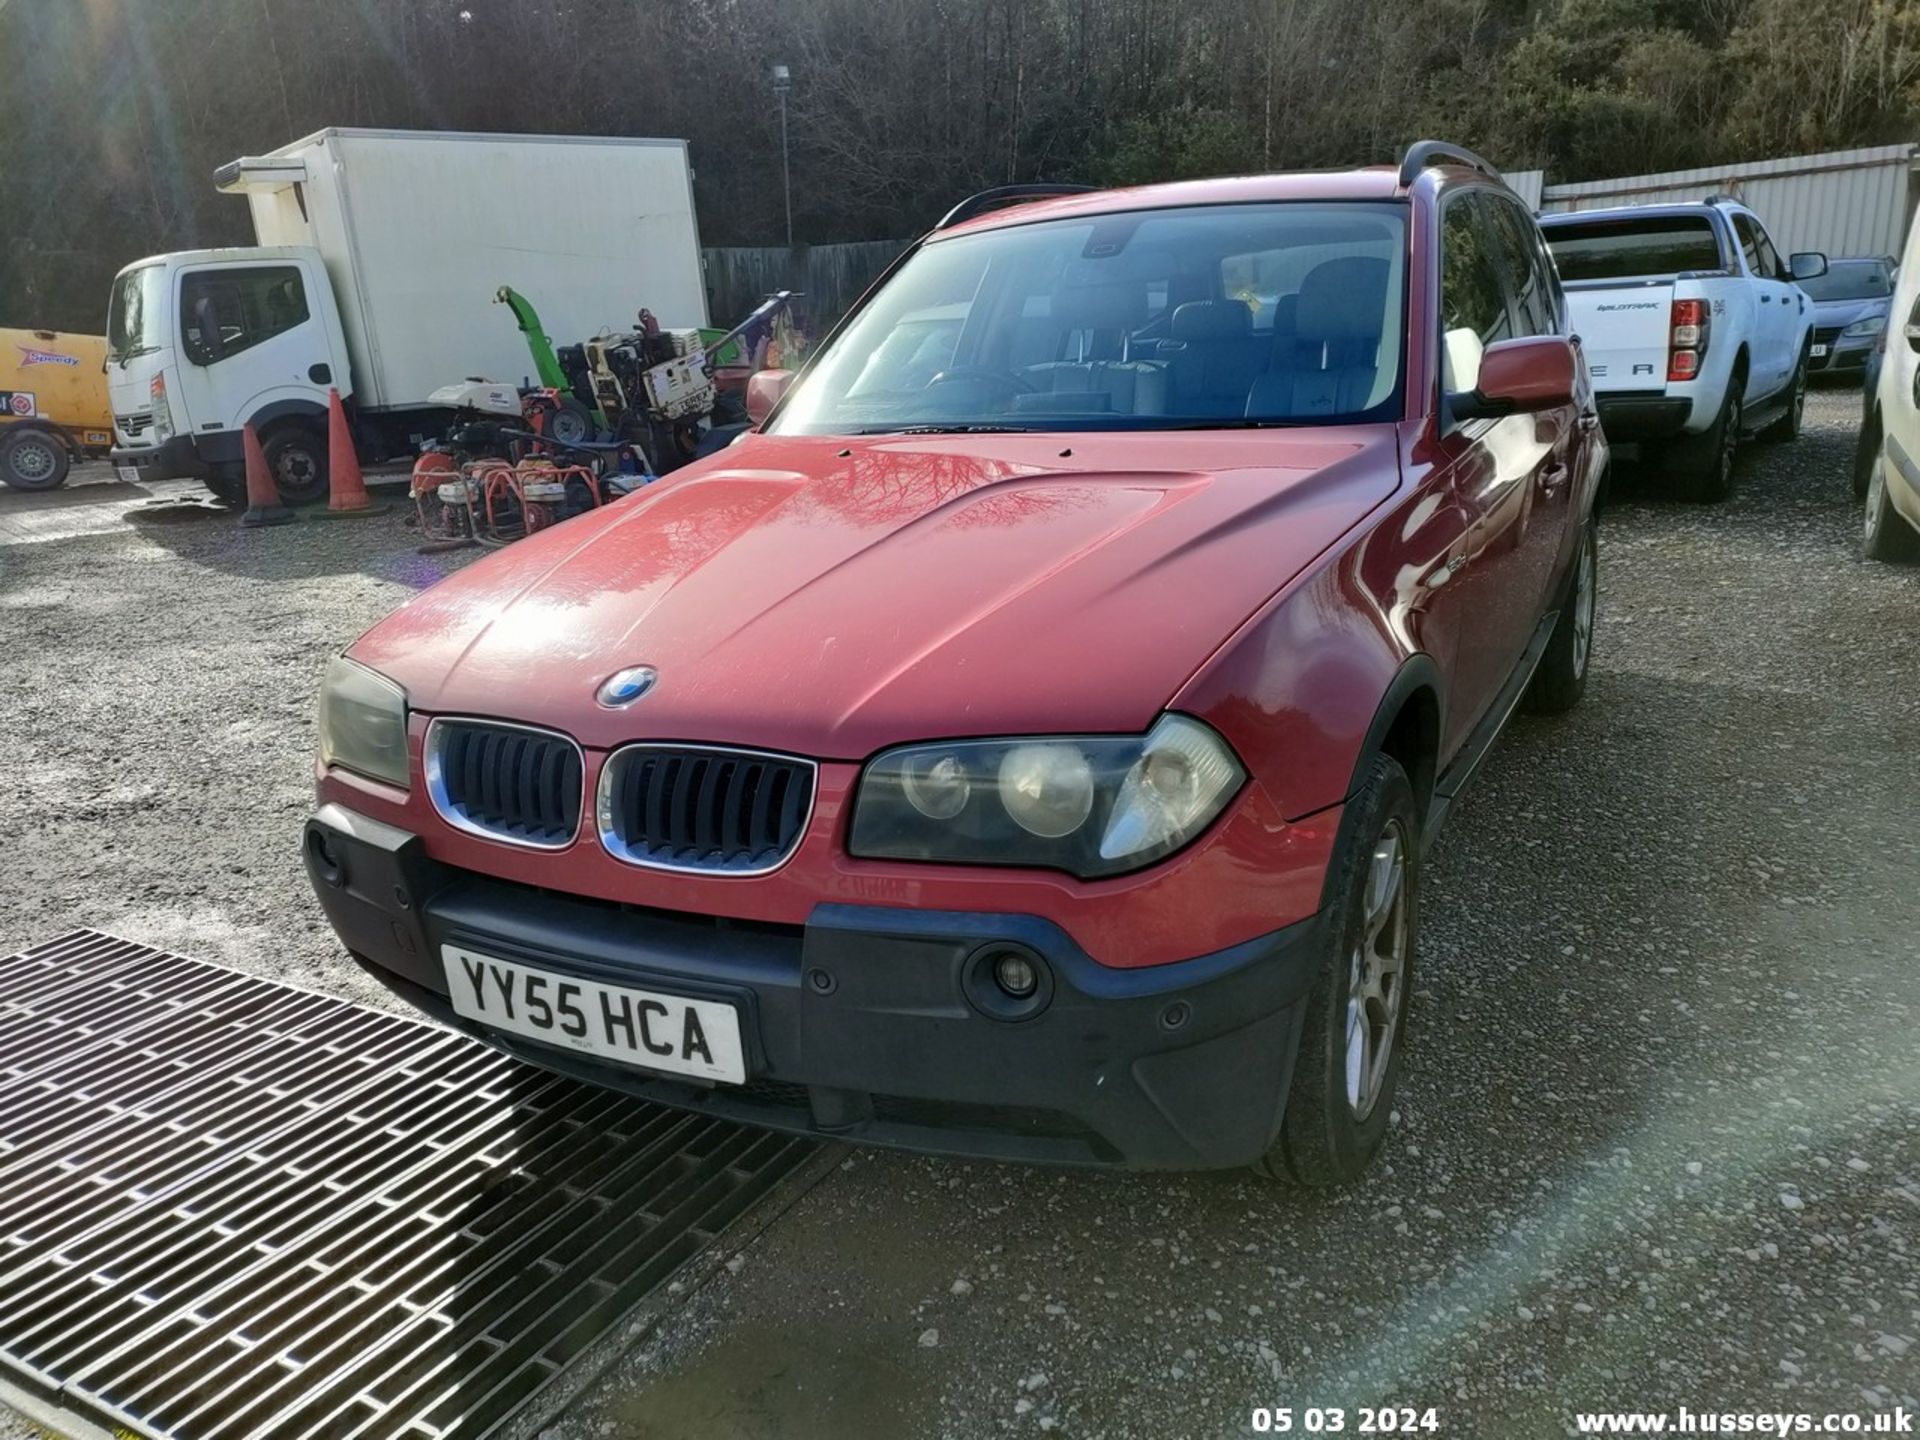 05/55 BMW X3 D SE - 1995cc 5dr Estate (Red, 188k) - Image 21 of 51